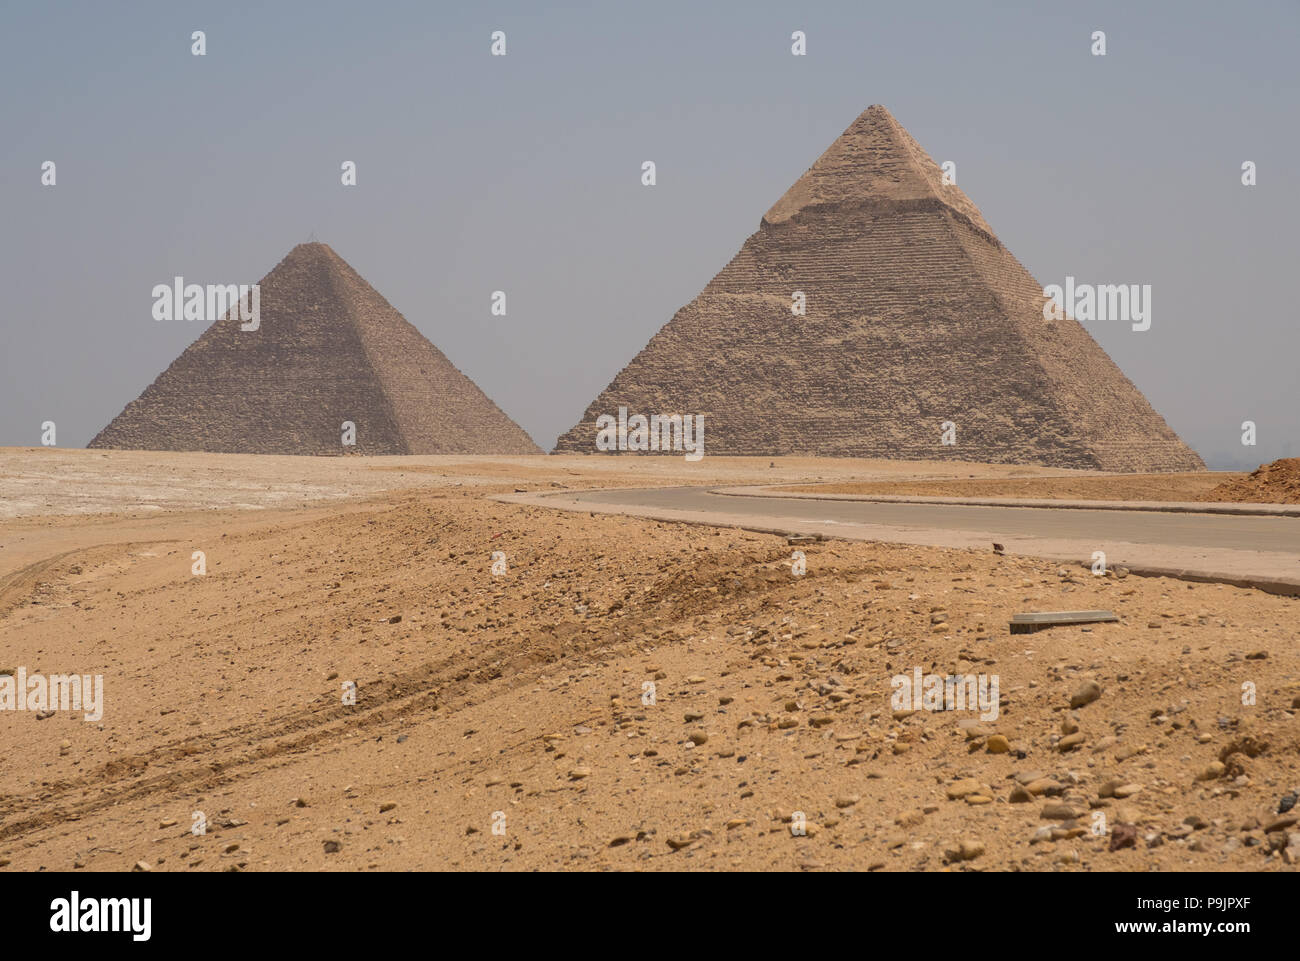 Pyramids of Giza, Egypt Stock Photo